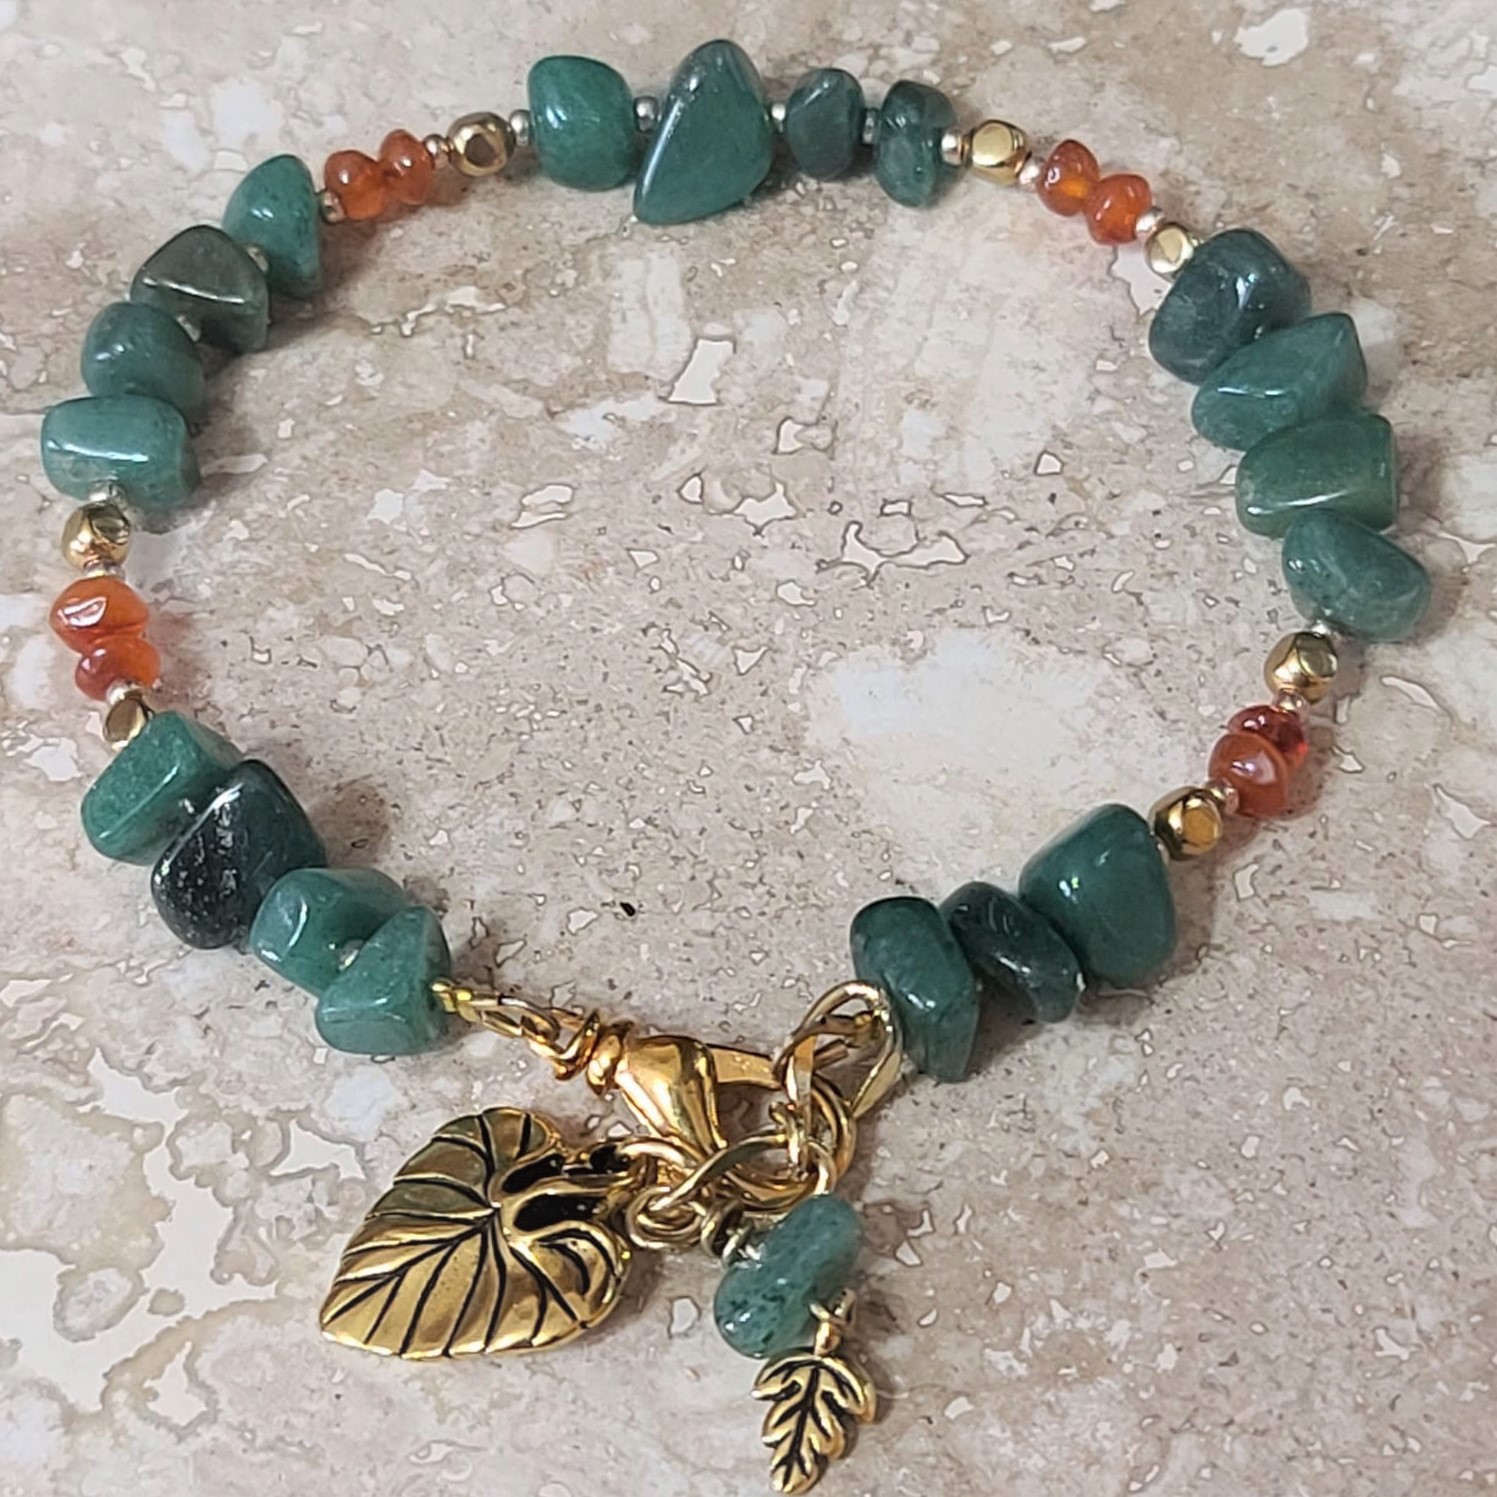 Carnelian & Jade Gemstone Bracelet with leaf charms